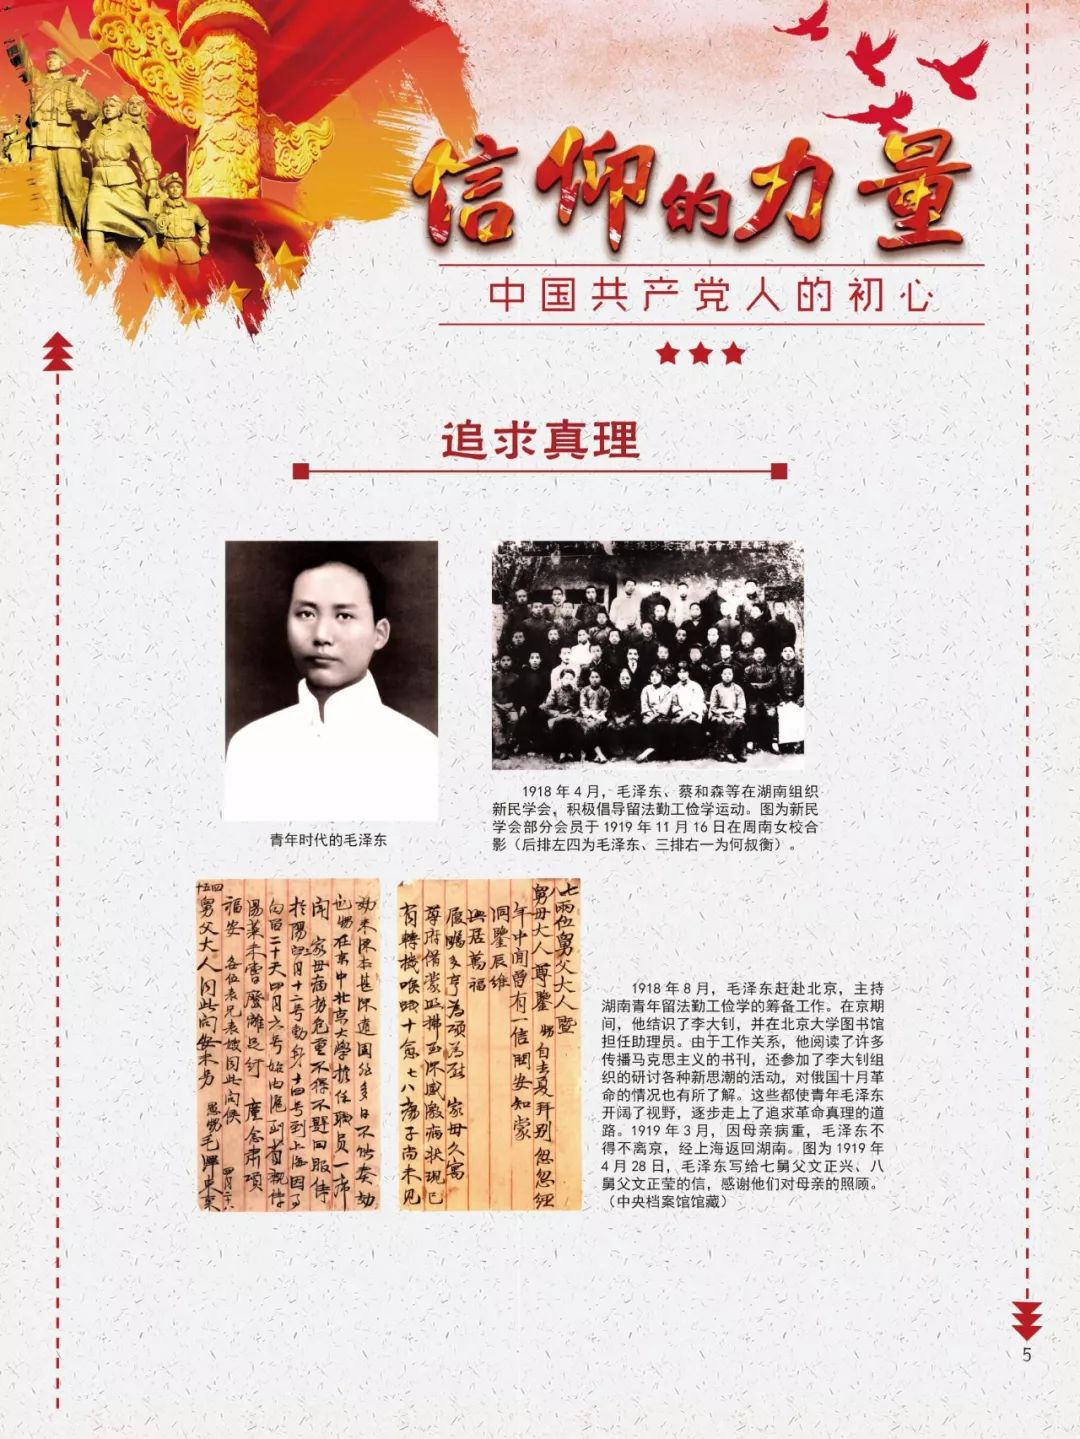 线上展览:信仰的力量——中国共产党人的初心